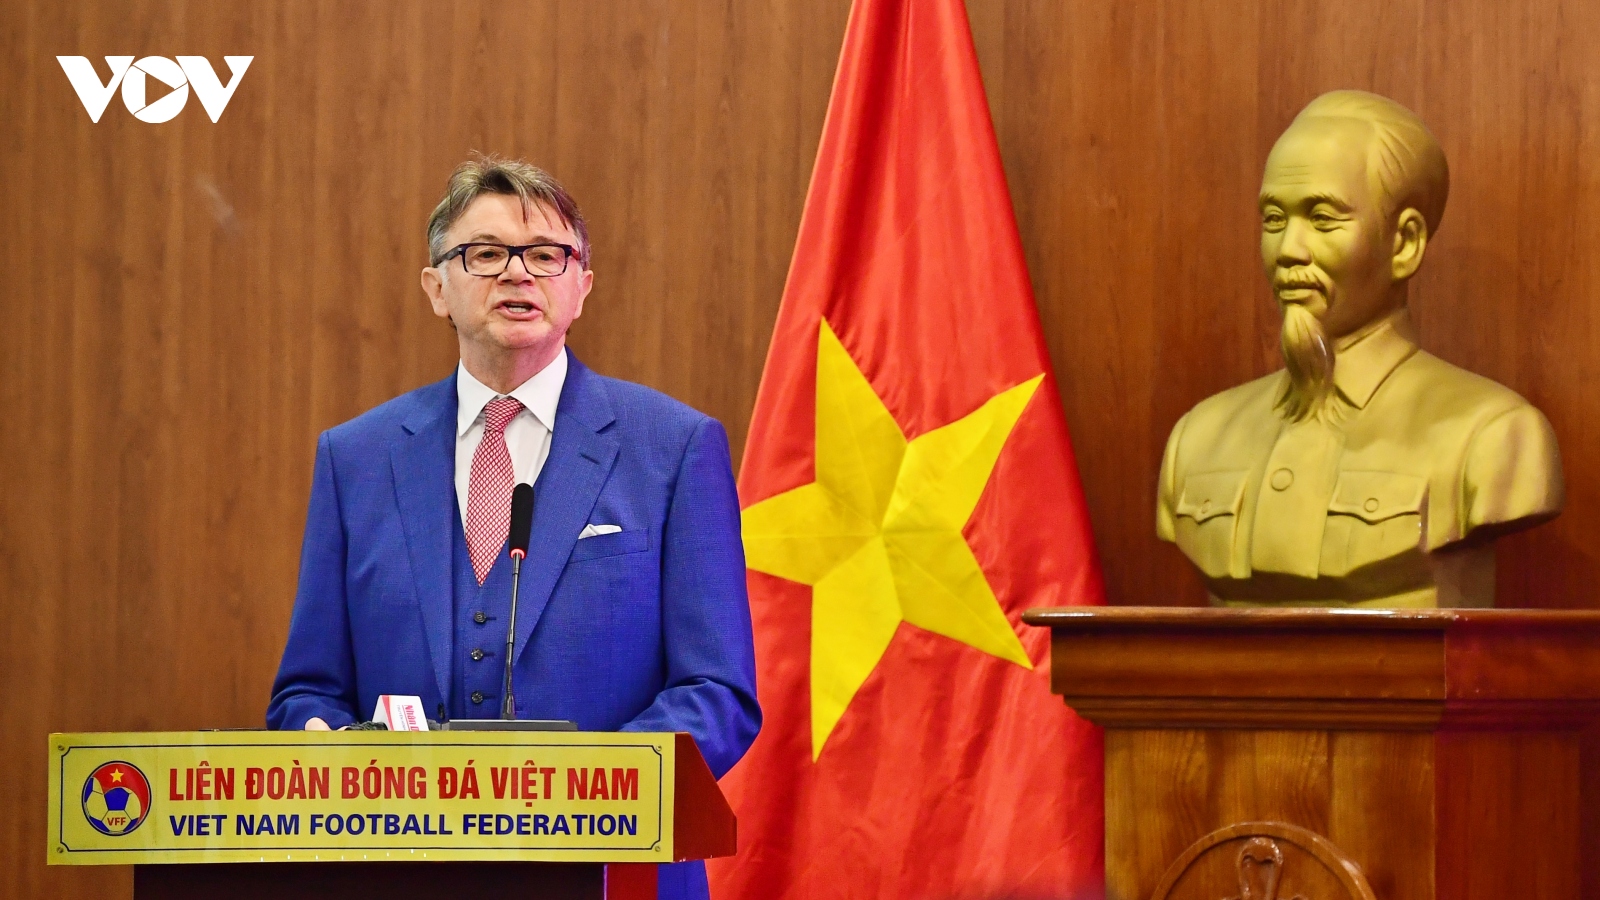 HLV Philippe Troussier và bài phát biểu đầy hứa hẹn với bóng đá Việt Nam